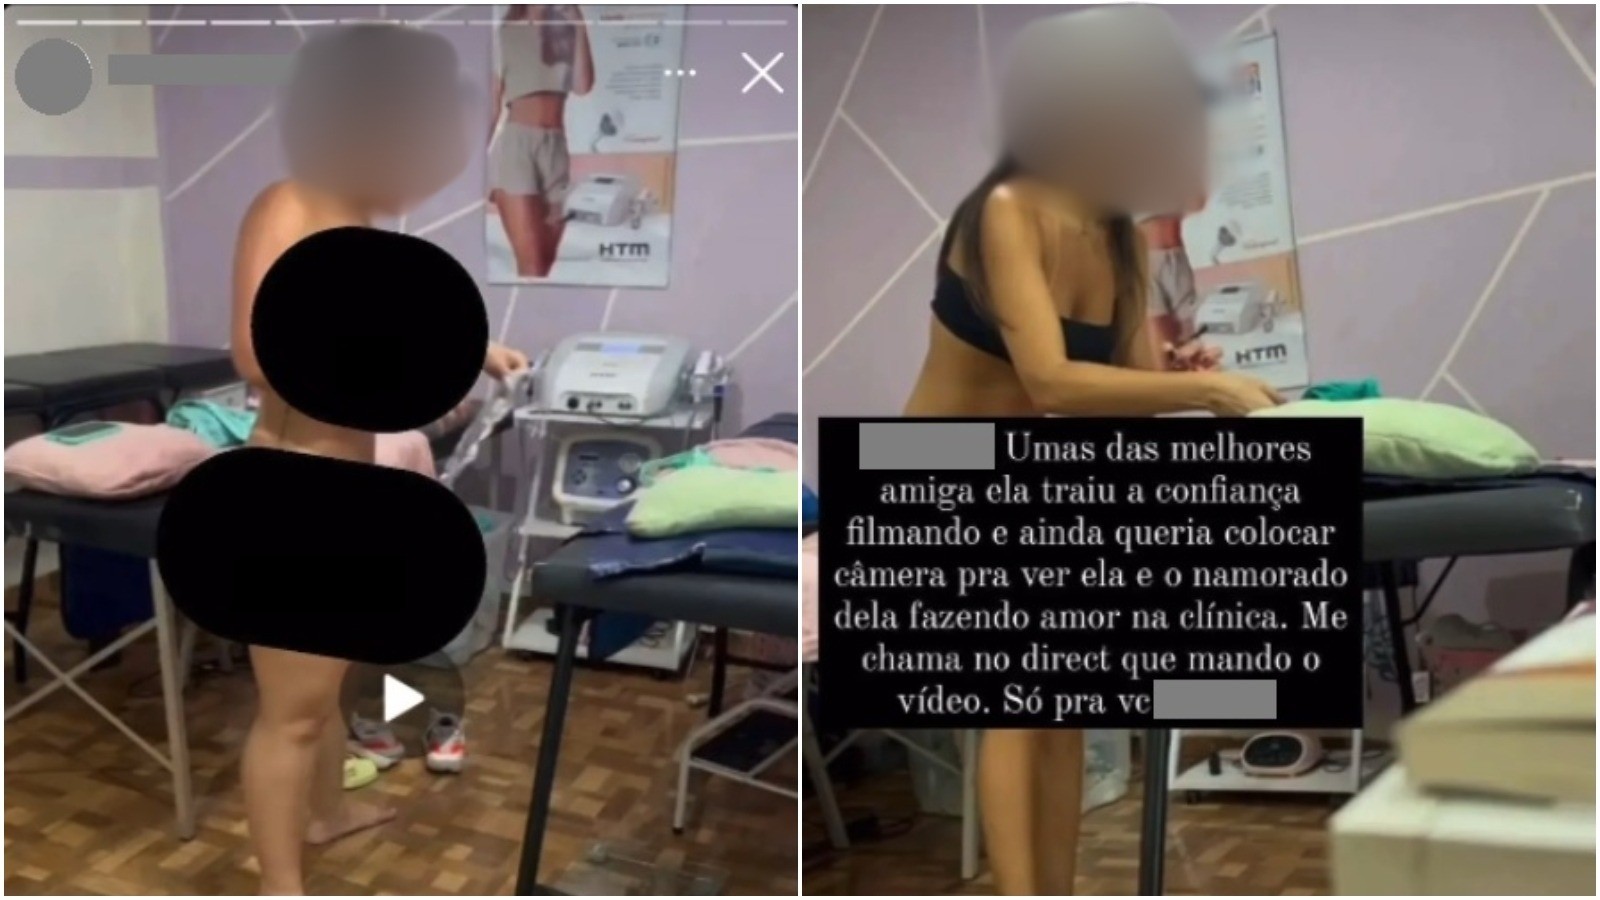 Cinco meses depois, polícia não concluiu investigação sobre clientes filmadas nuas em clínica de estética